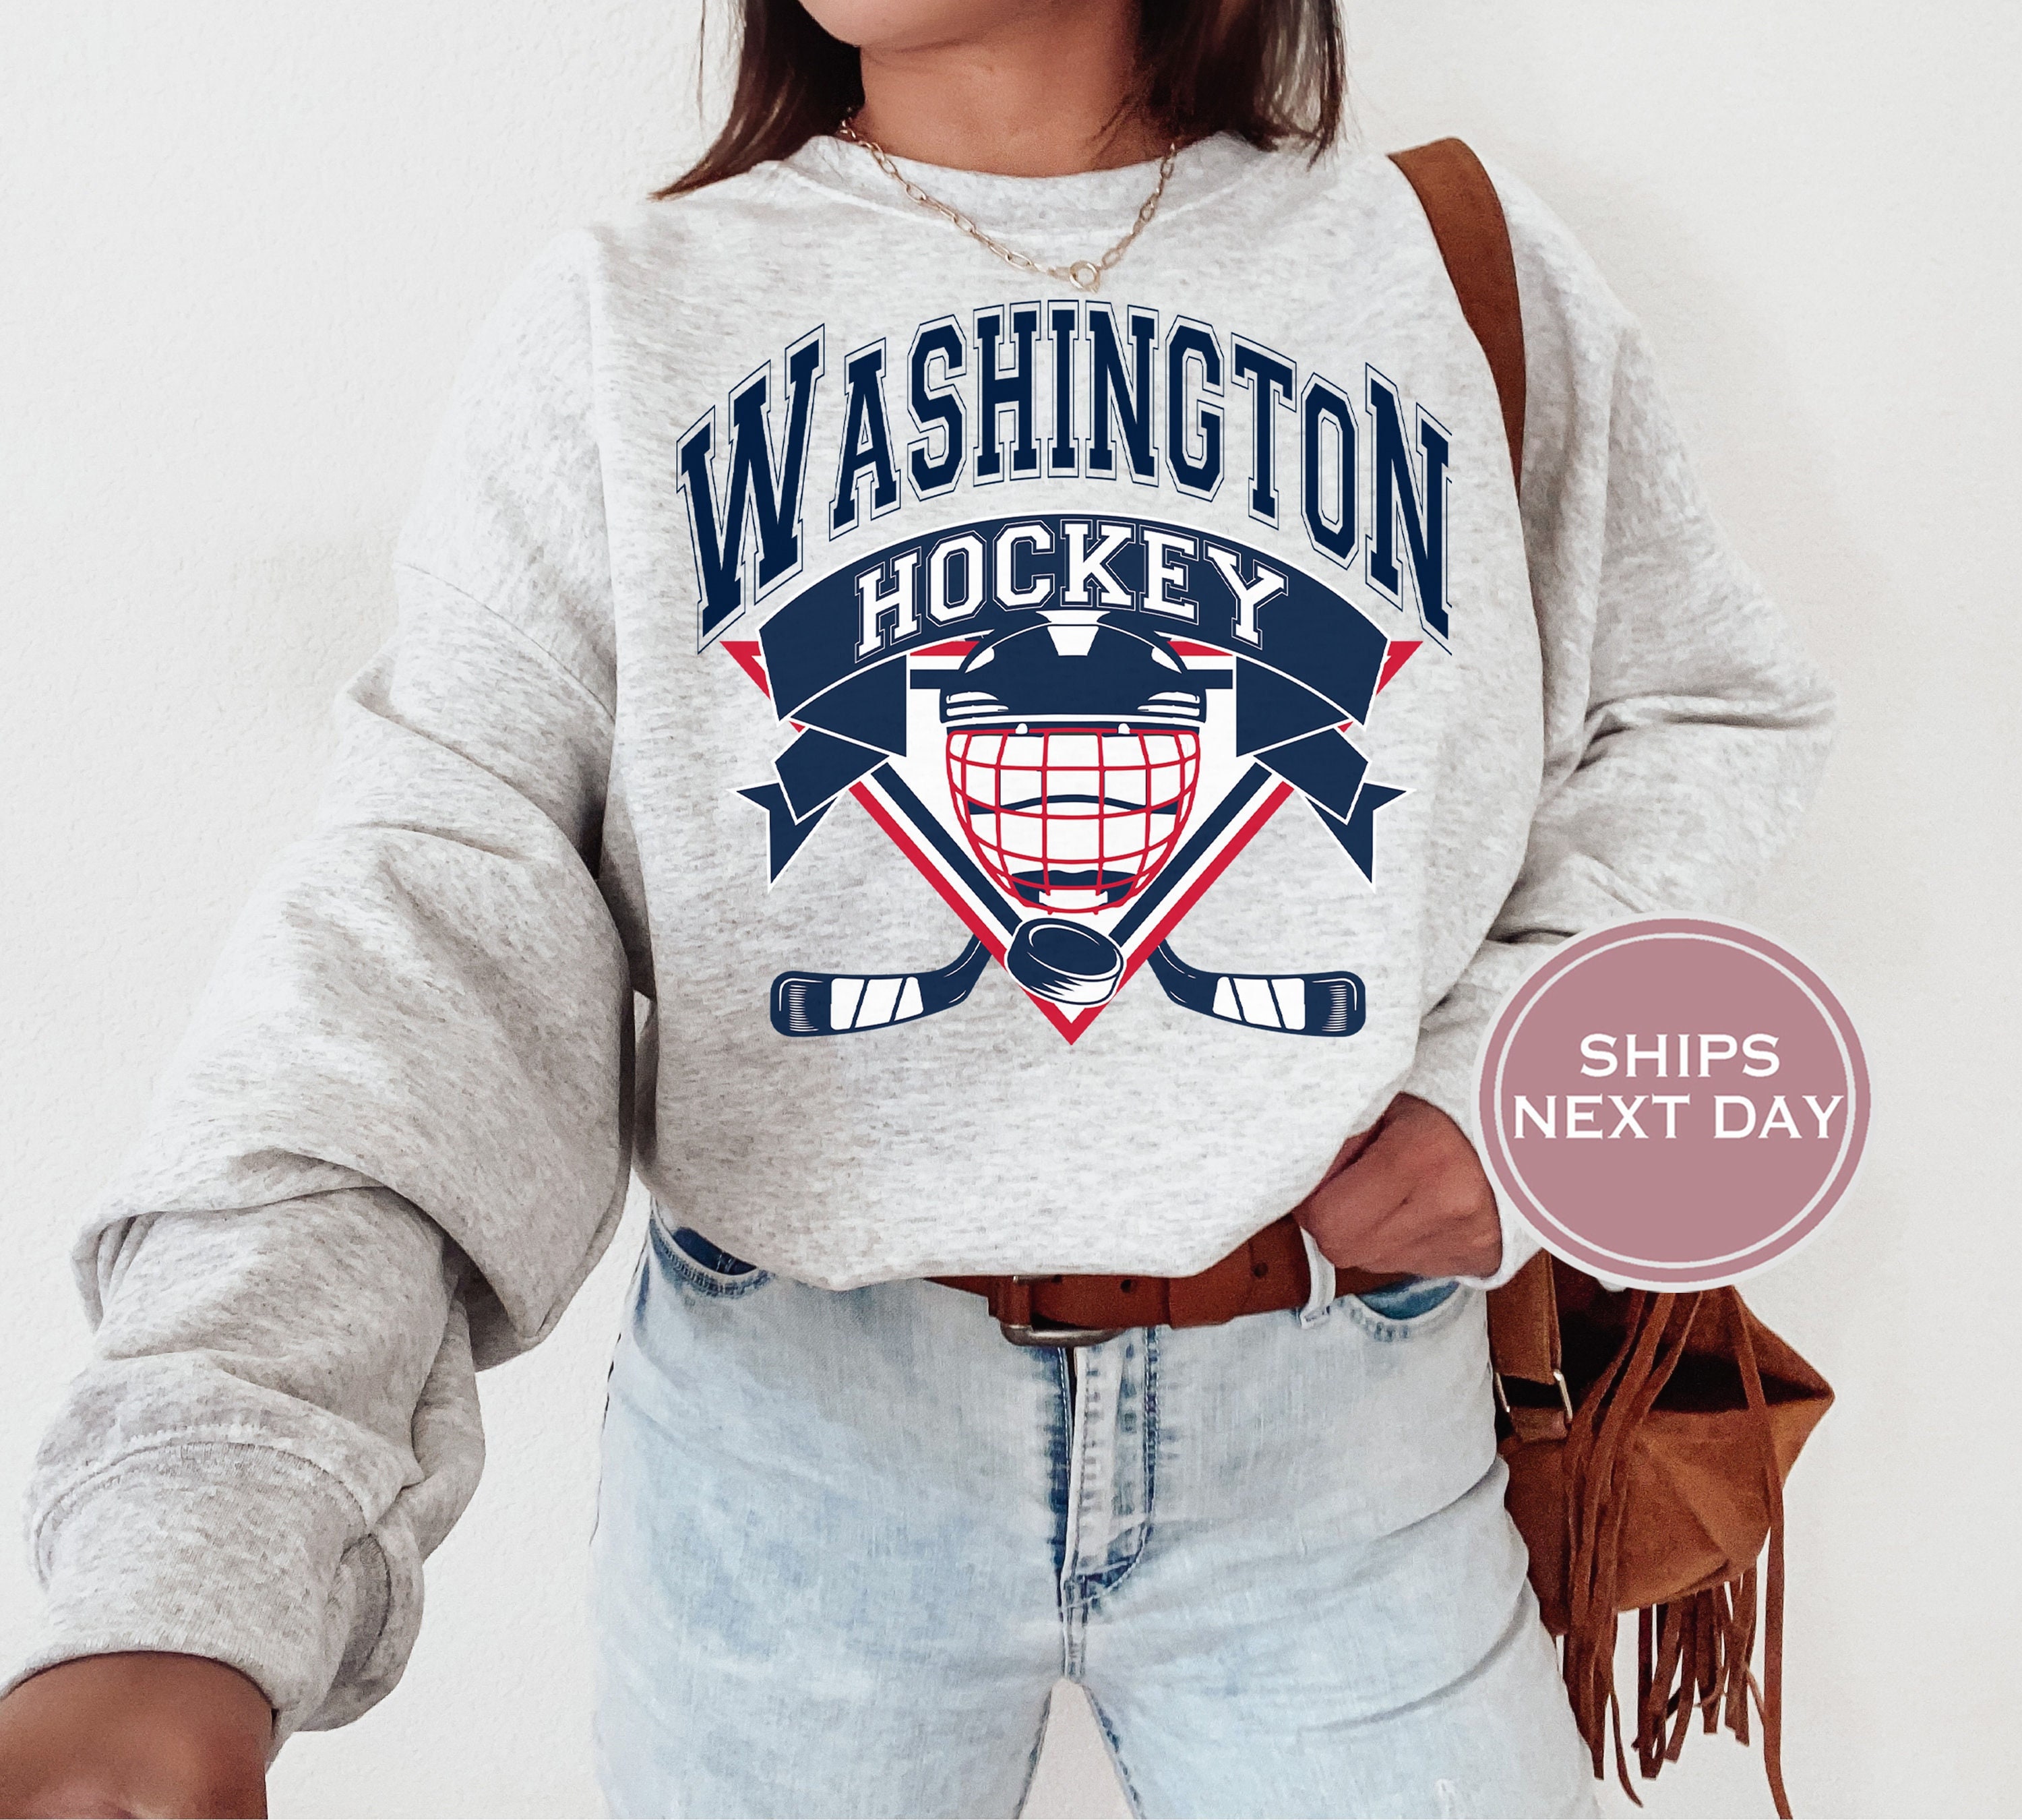 Vintage Style Washington DC Hockey Sweatshirt, DC Hockey Sweatshirt, Retro  DC Hockey Crewneck, Cute Washington Hockey Sweatshirt, Hockey T